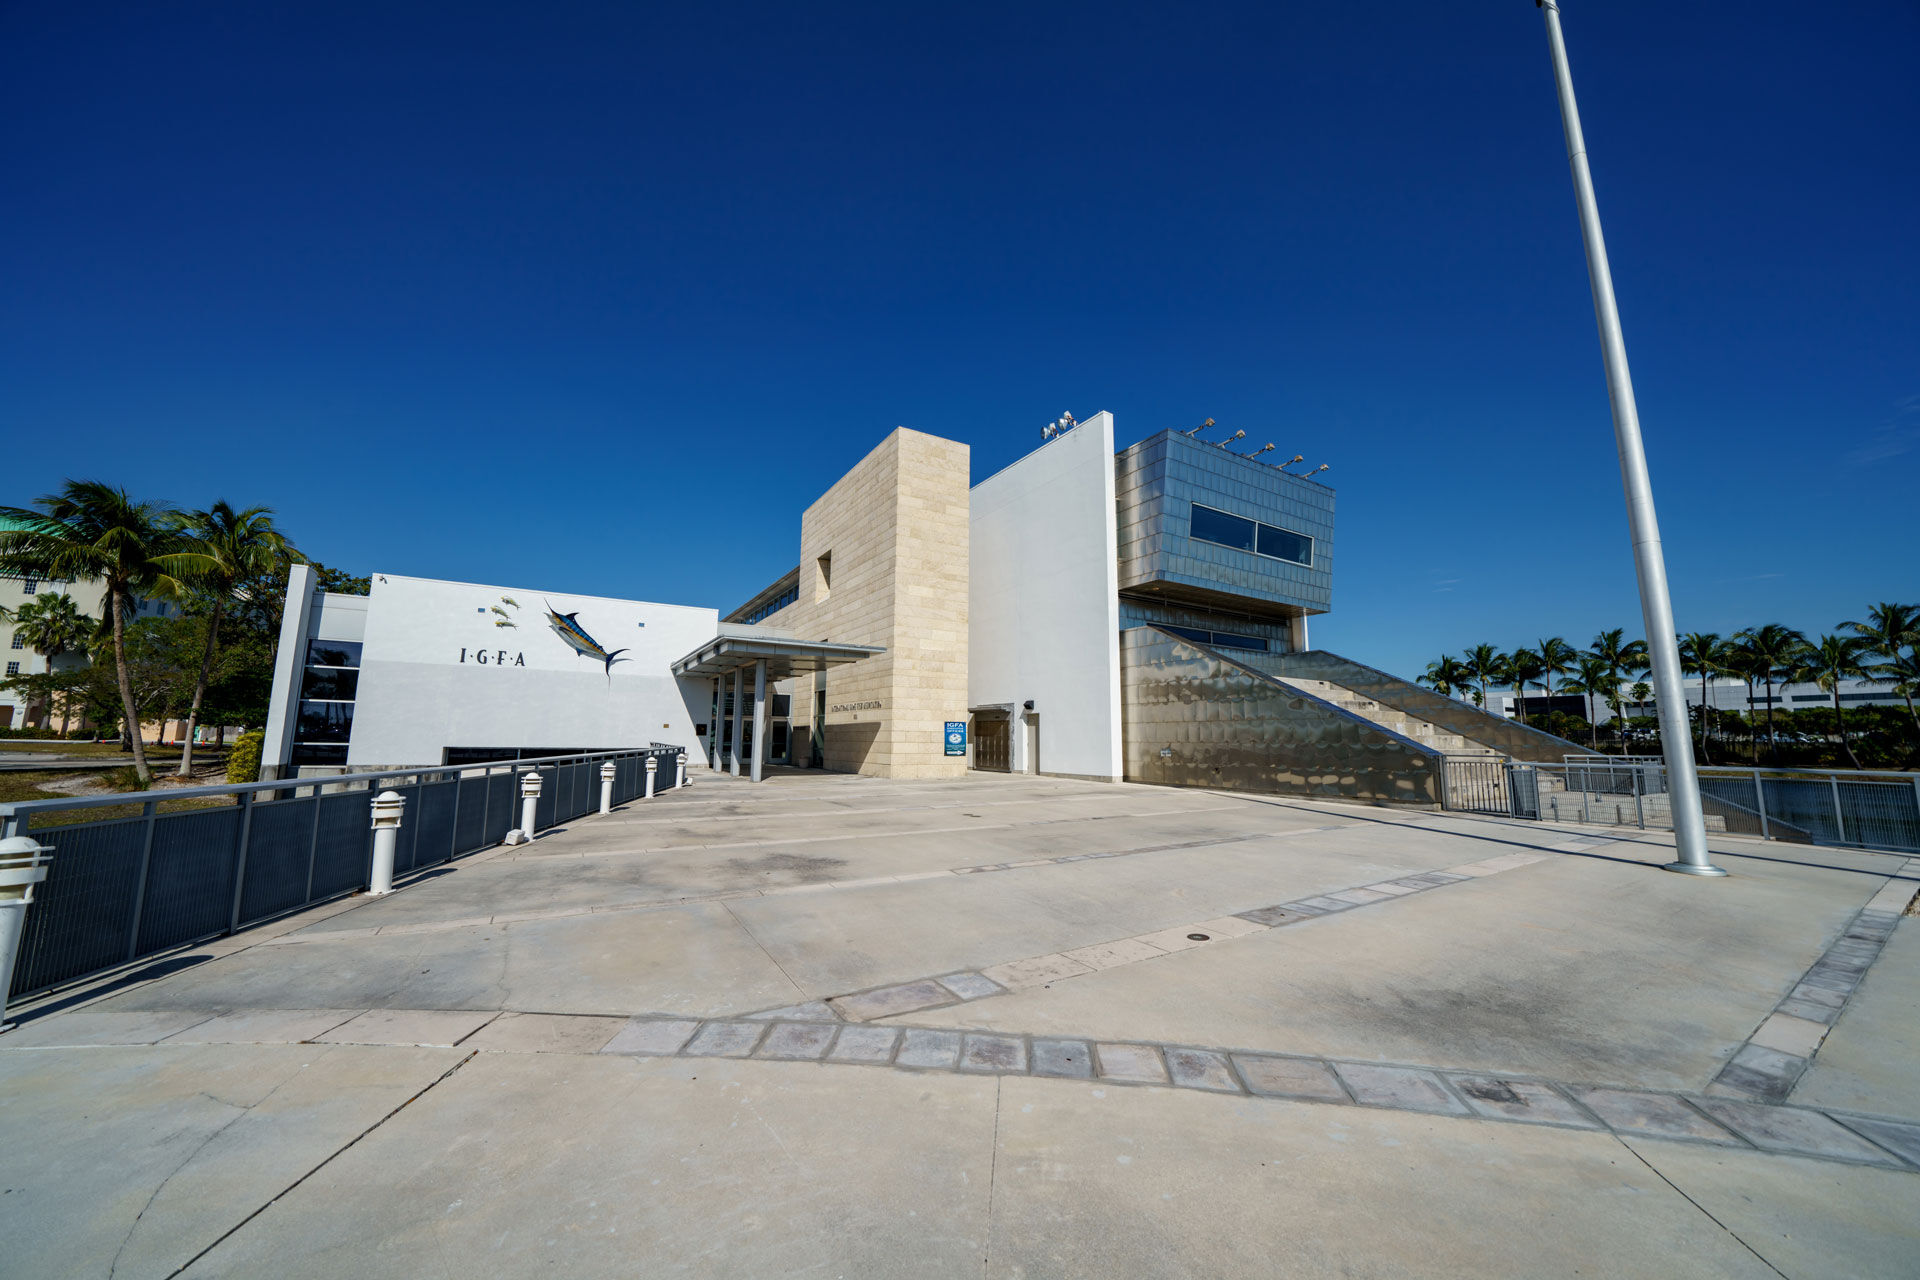  Keine falsche Bescheidenheit:  Das prächtige Hauptquartier der IGFA in Dania Beach, Florida. © stock.adobe.com  